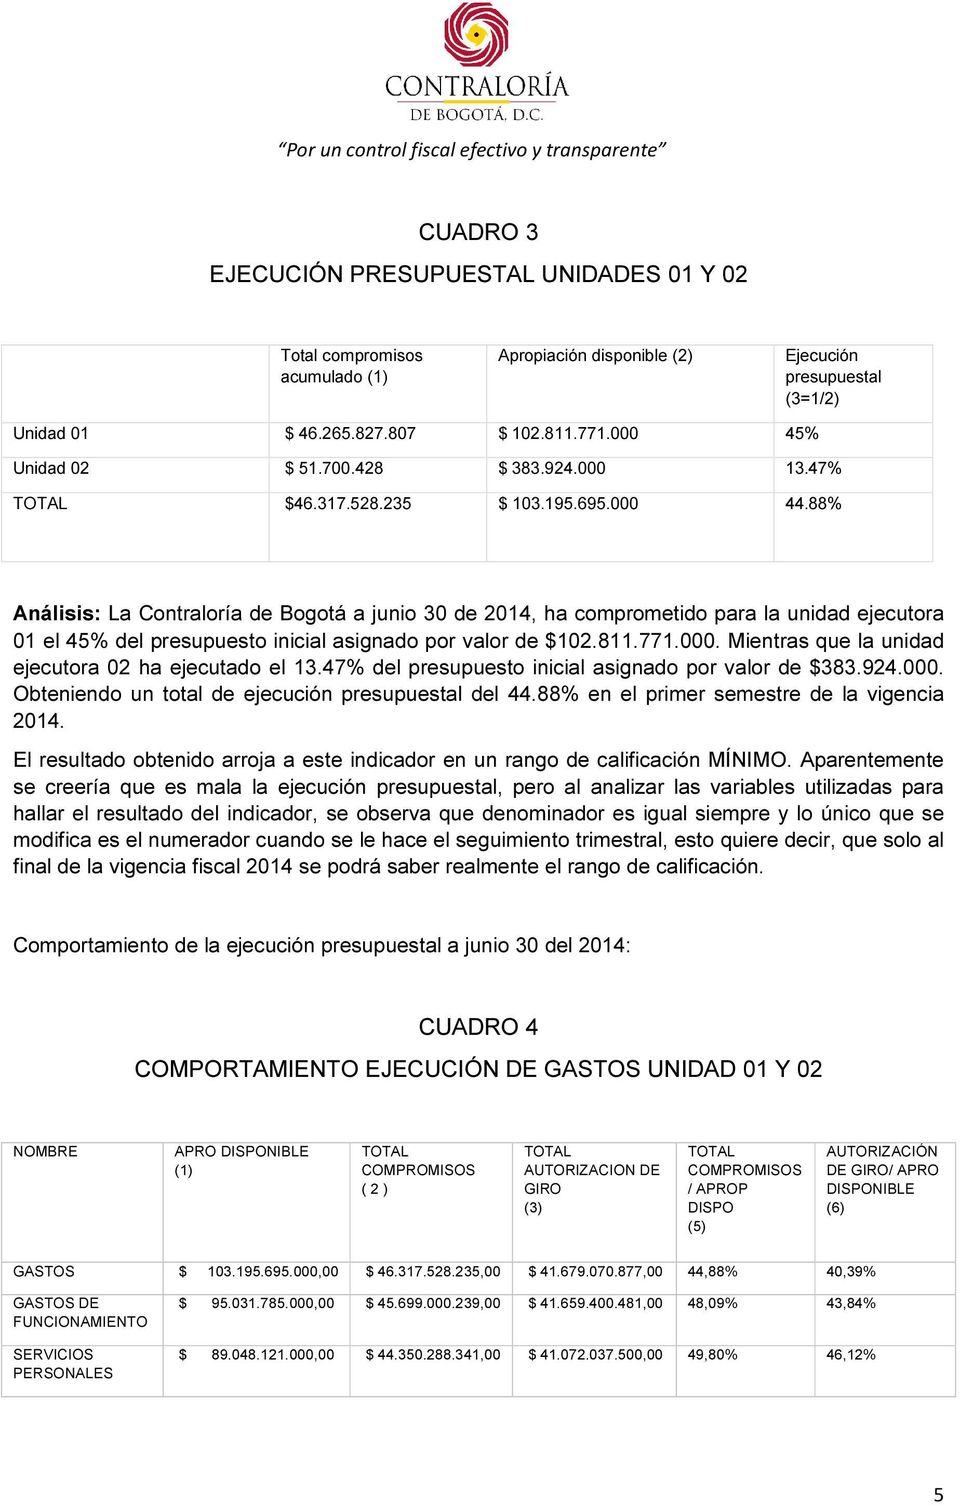 88% Análisis: La Contraloría de Bogotá a junio 30 de 2014, ha comprometido para la unidad ejecutora 01 el 45% del presupuesto inicial asignado por valor de $102.811.771.000.